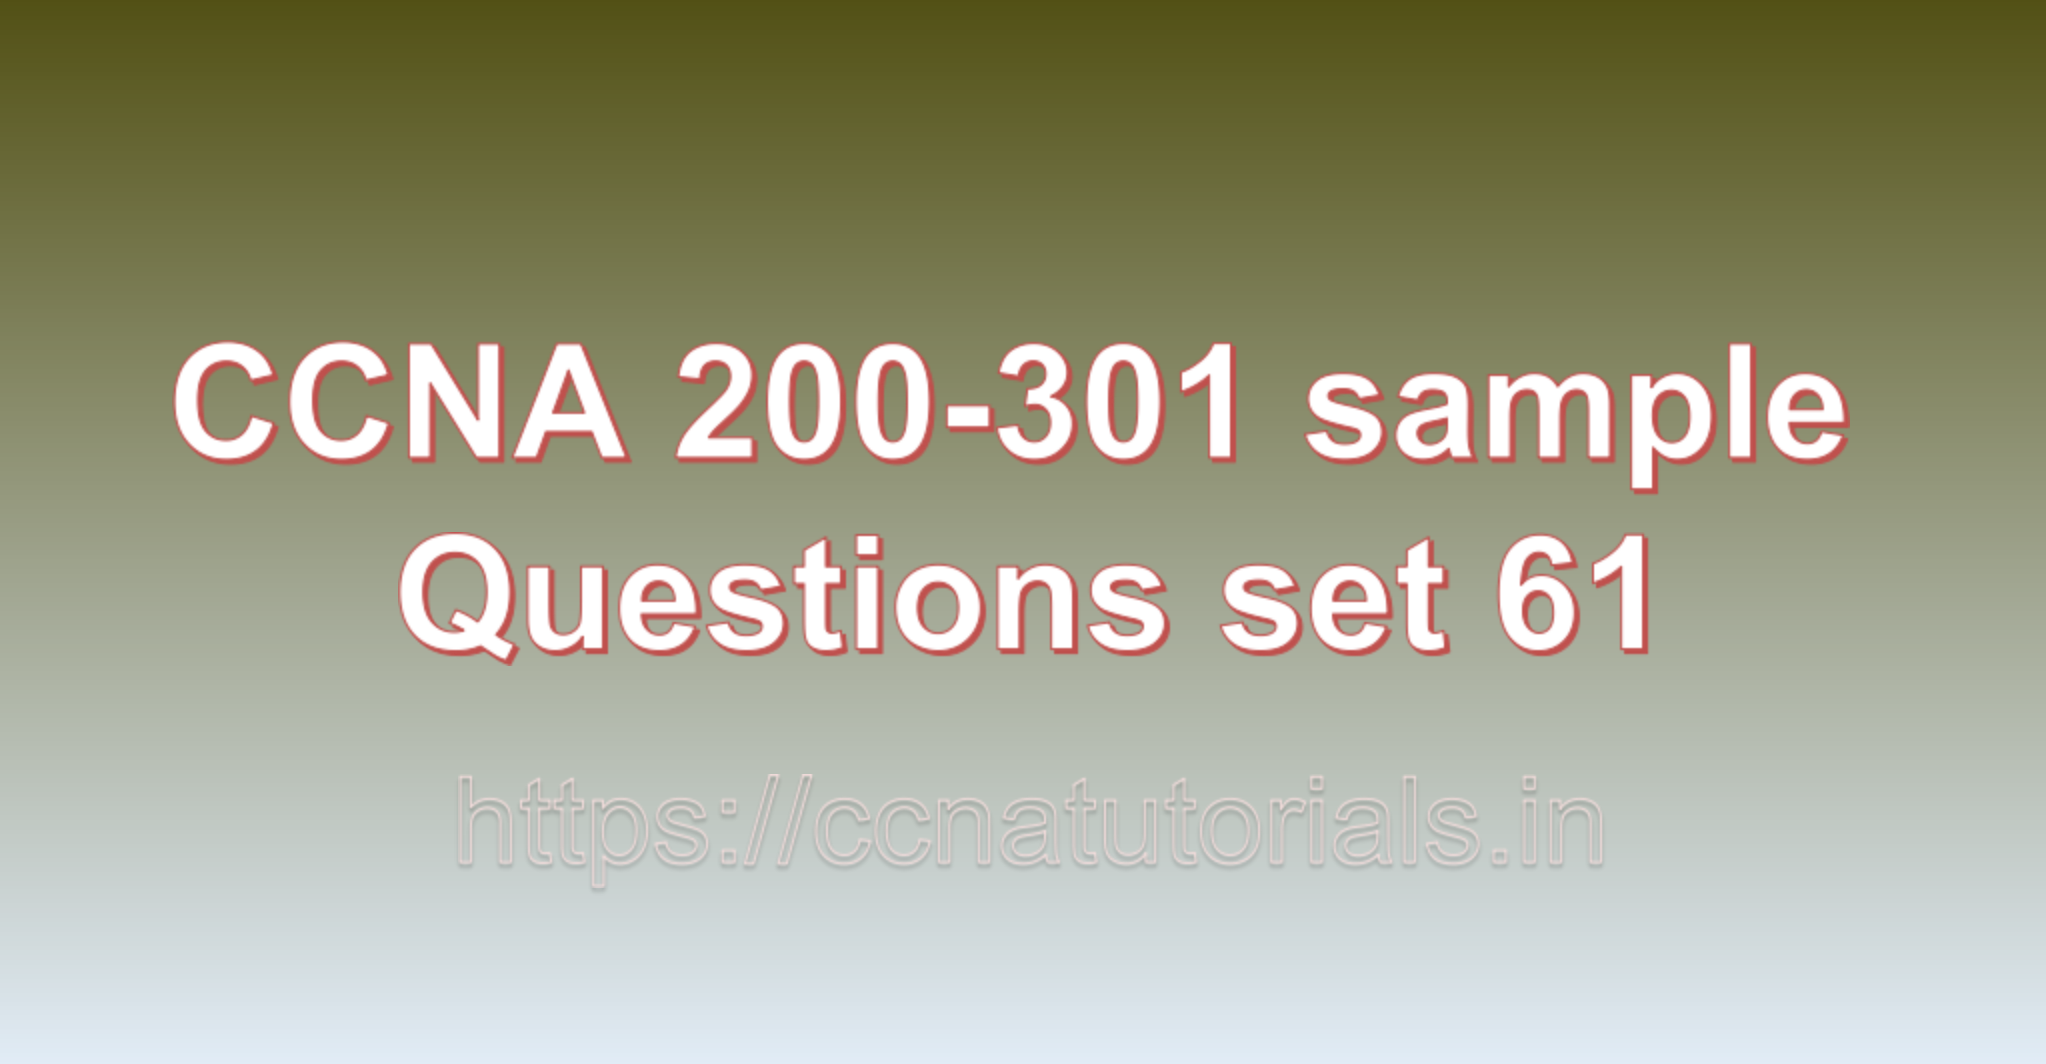 ccna sample questions set 61, ccna tutorials, CCNA Exam, ccna